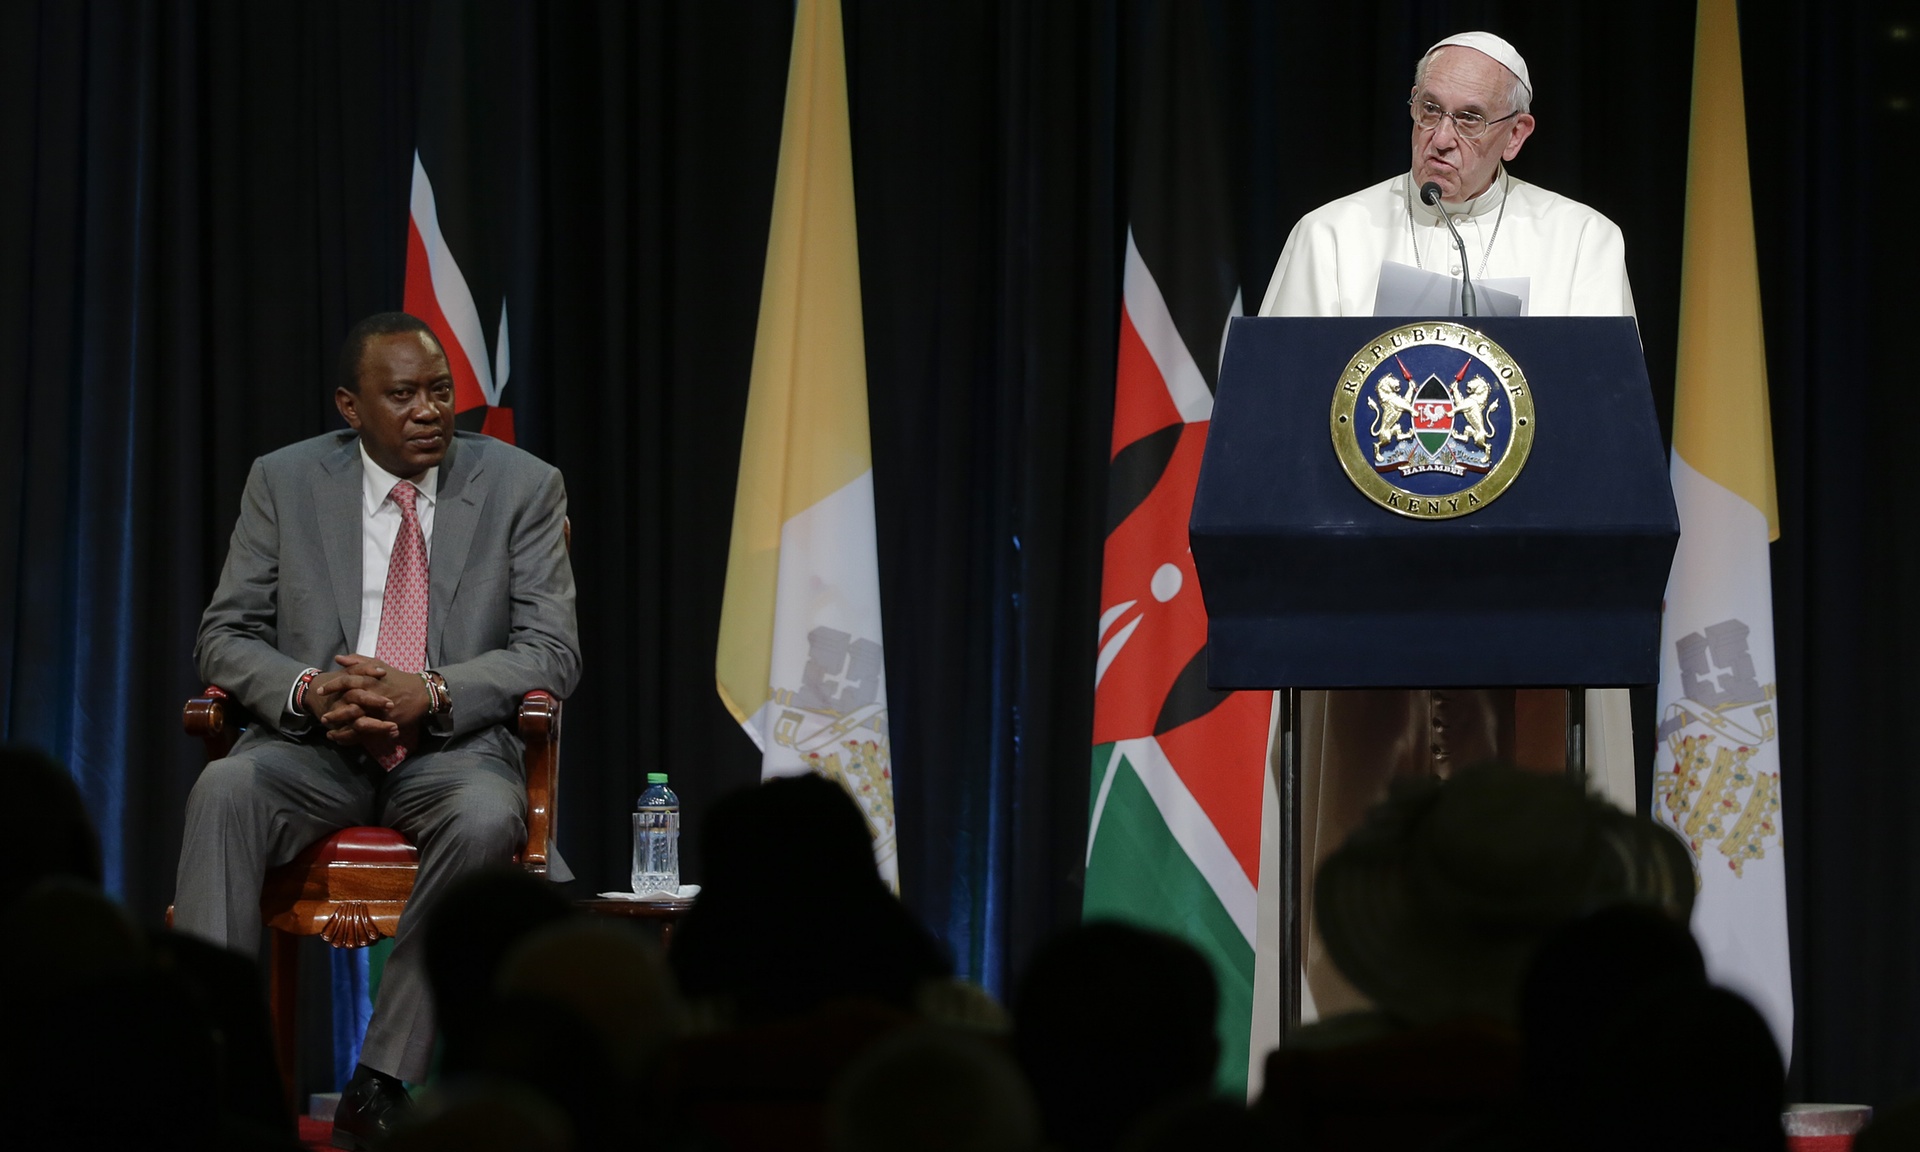 L'arrivo di papa Francesco in Kenya